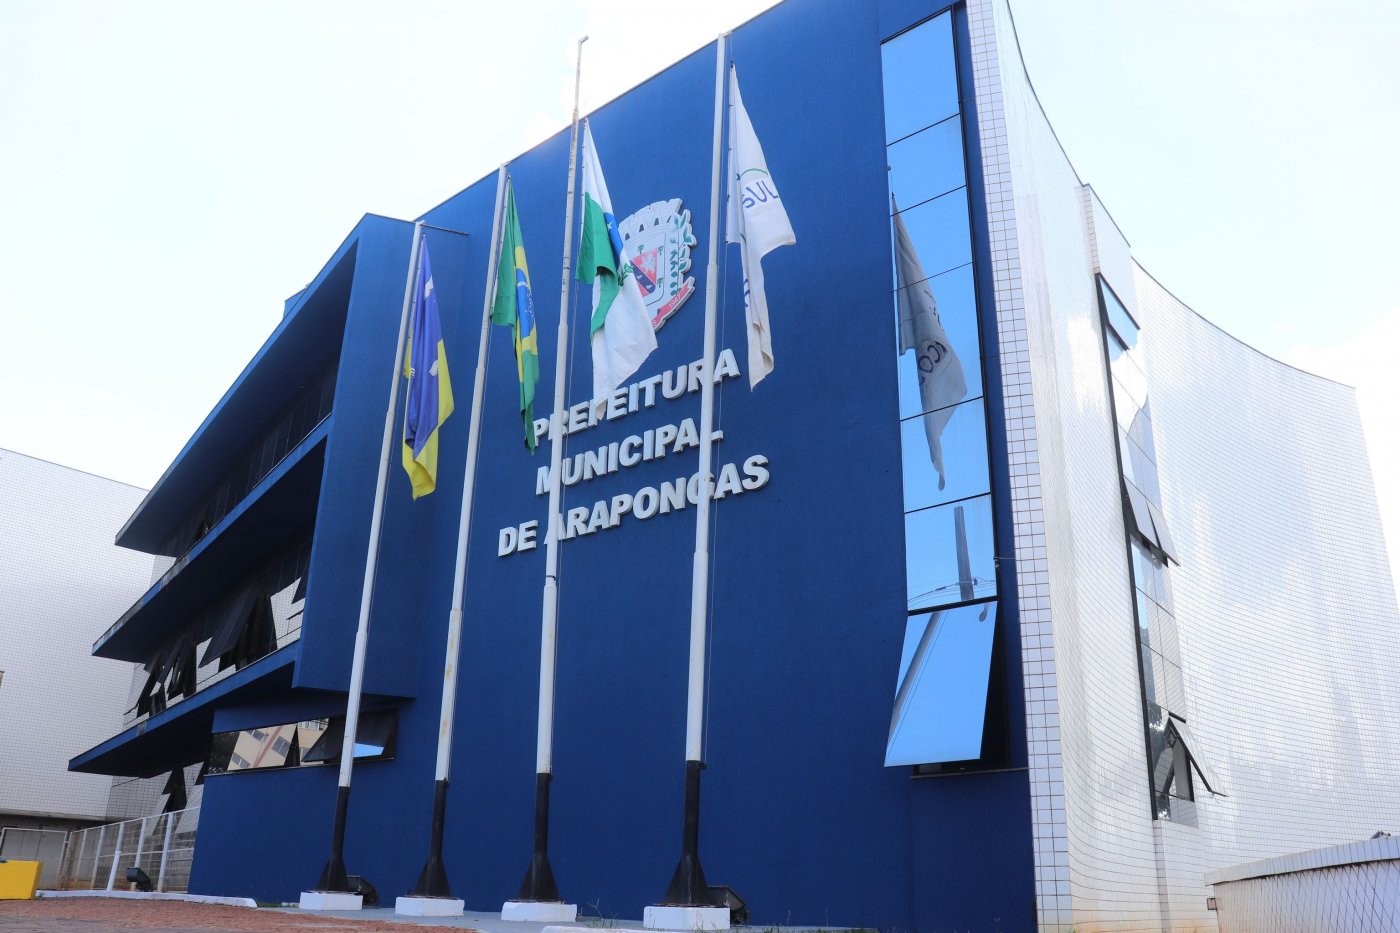 Prefeitura estabelece horário de expediente nos dias de jogos do Brasil na  Copa do Mundo da Fifa 2022 - PREFEITURA MUNICIPAL DE VILA PAVÃO - ES